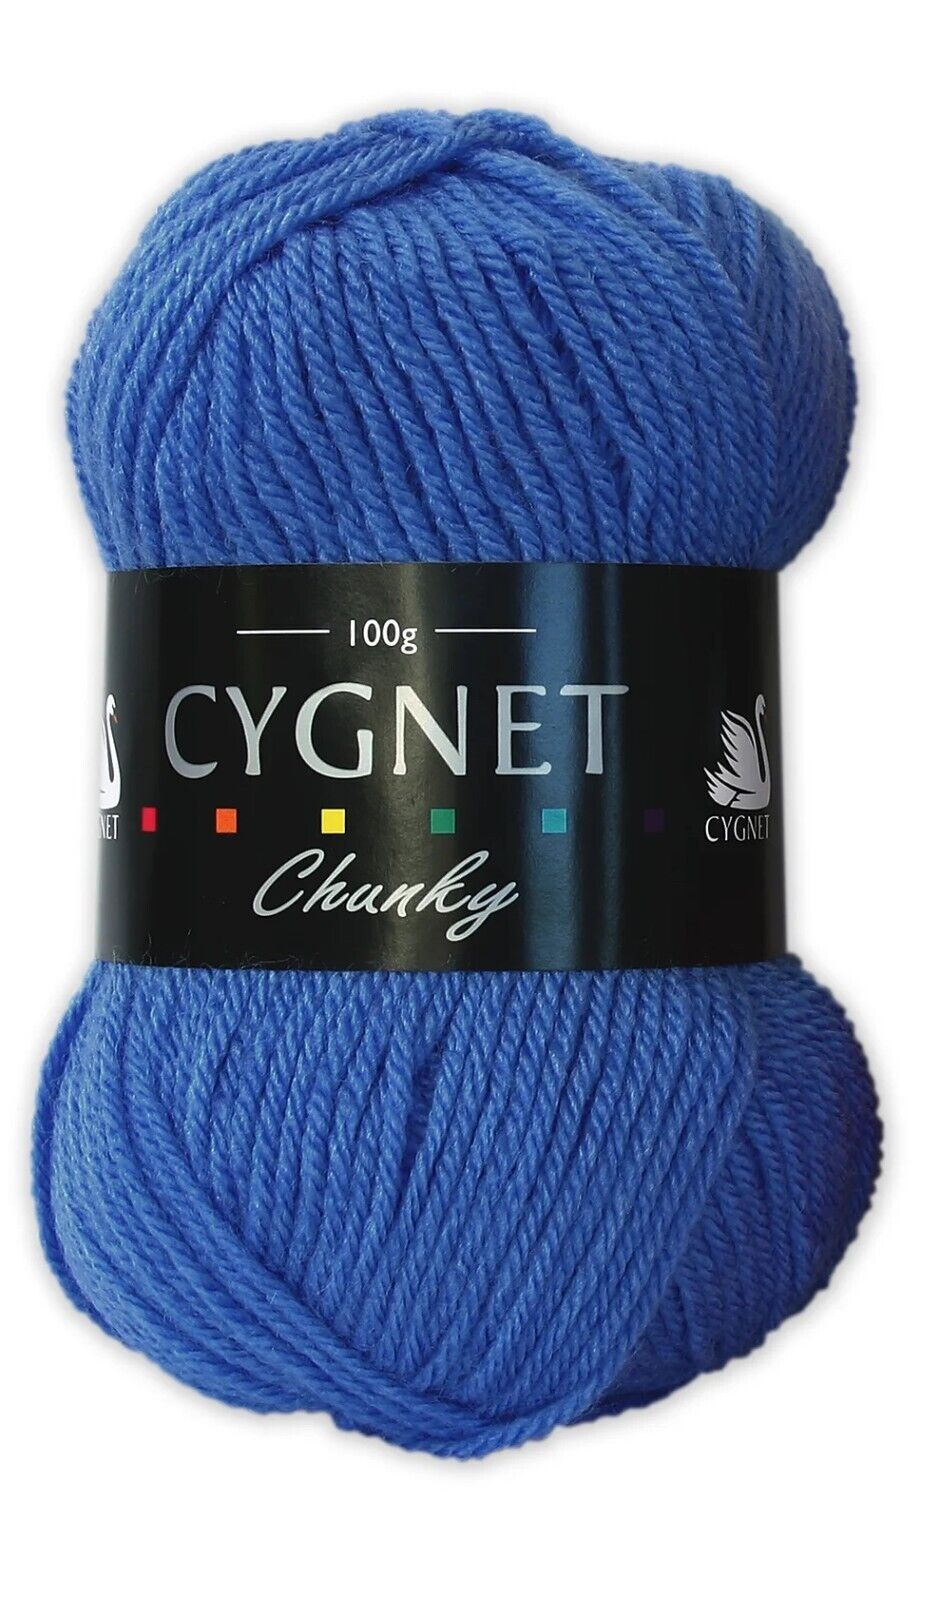 Cygnet CHUNKY Knitting Yarn / Wool - 100g Chunky Knit Ball - Saxe